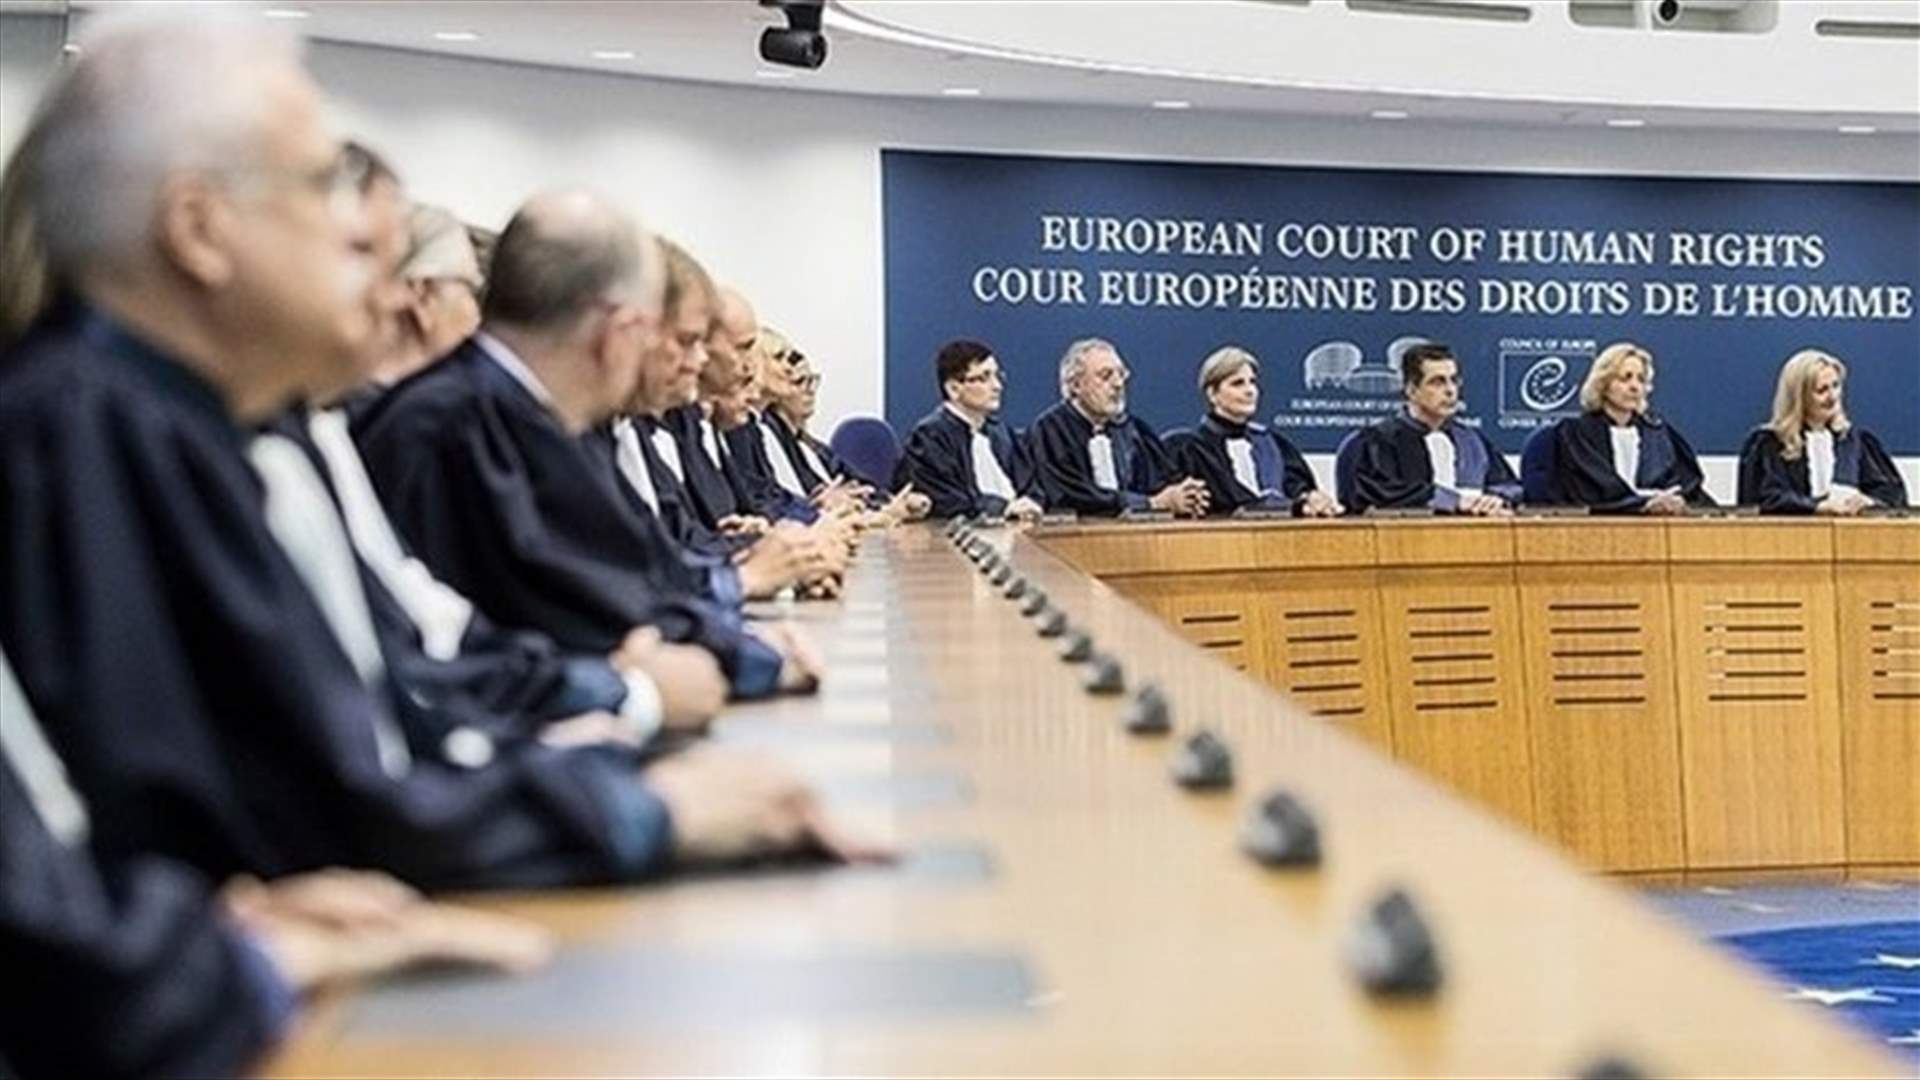 المحكمة الأوروبية لحقوق الإنسان تدين فرنسا وتطلب منها إعادة النظر في طلبات إعادة عائلات الجهاديين من سوريا